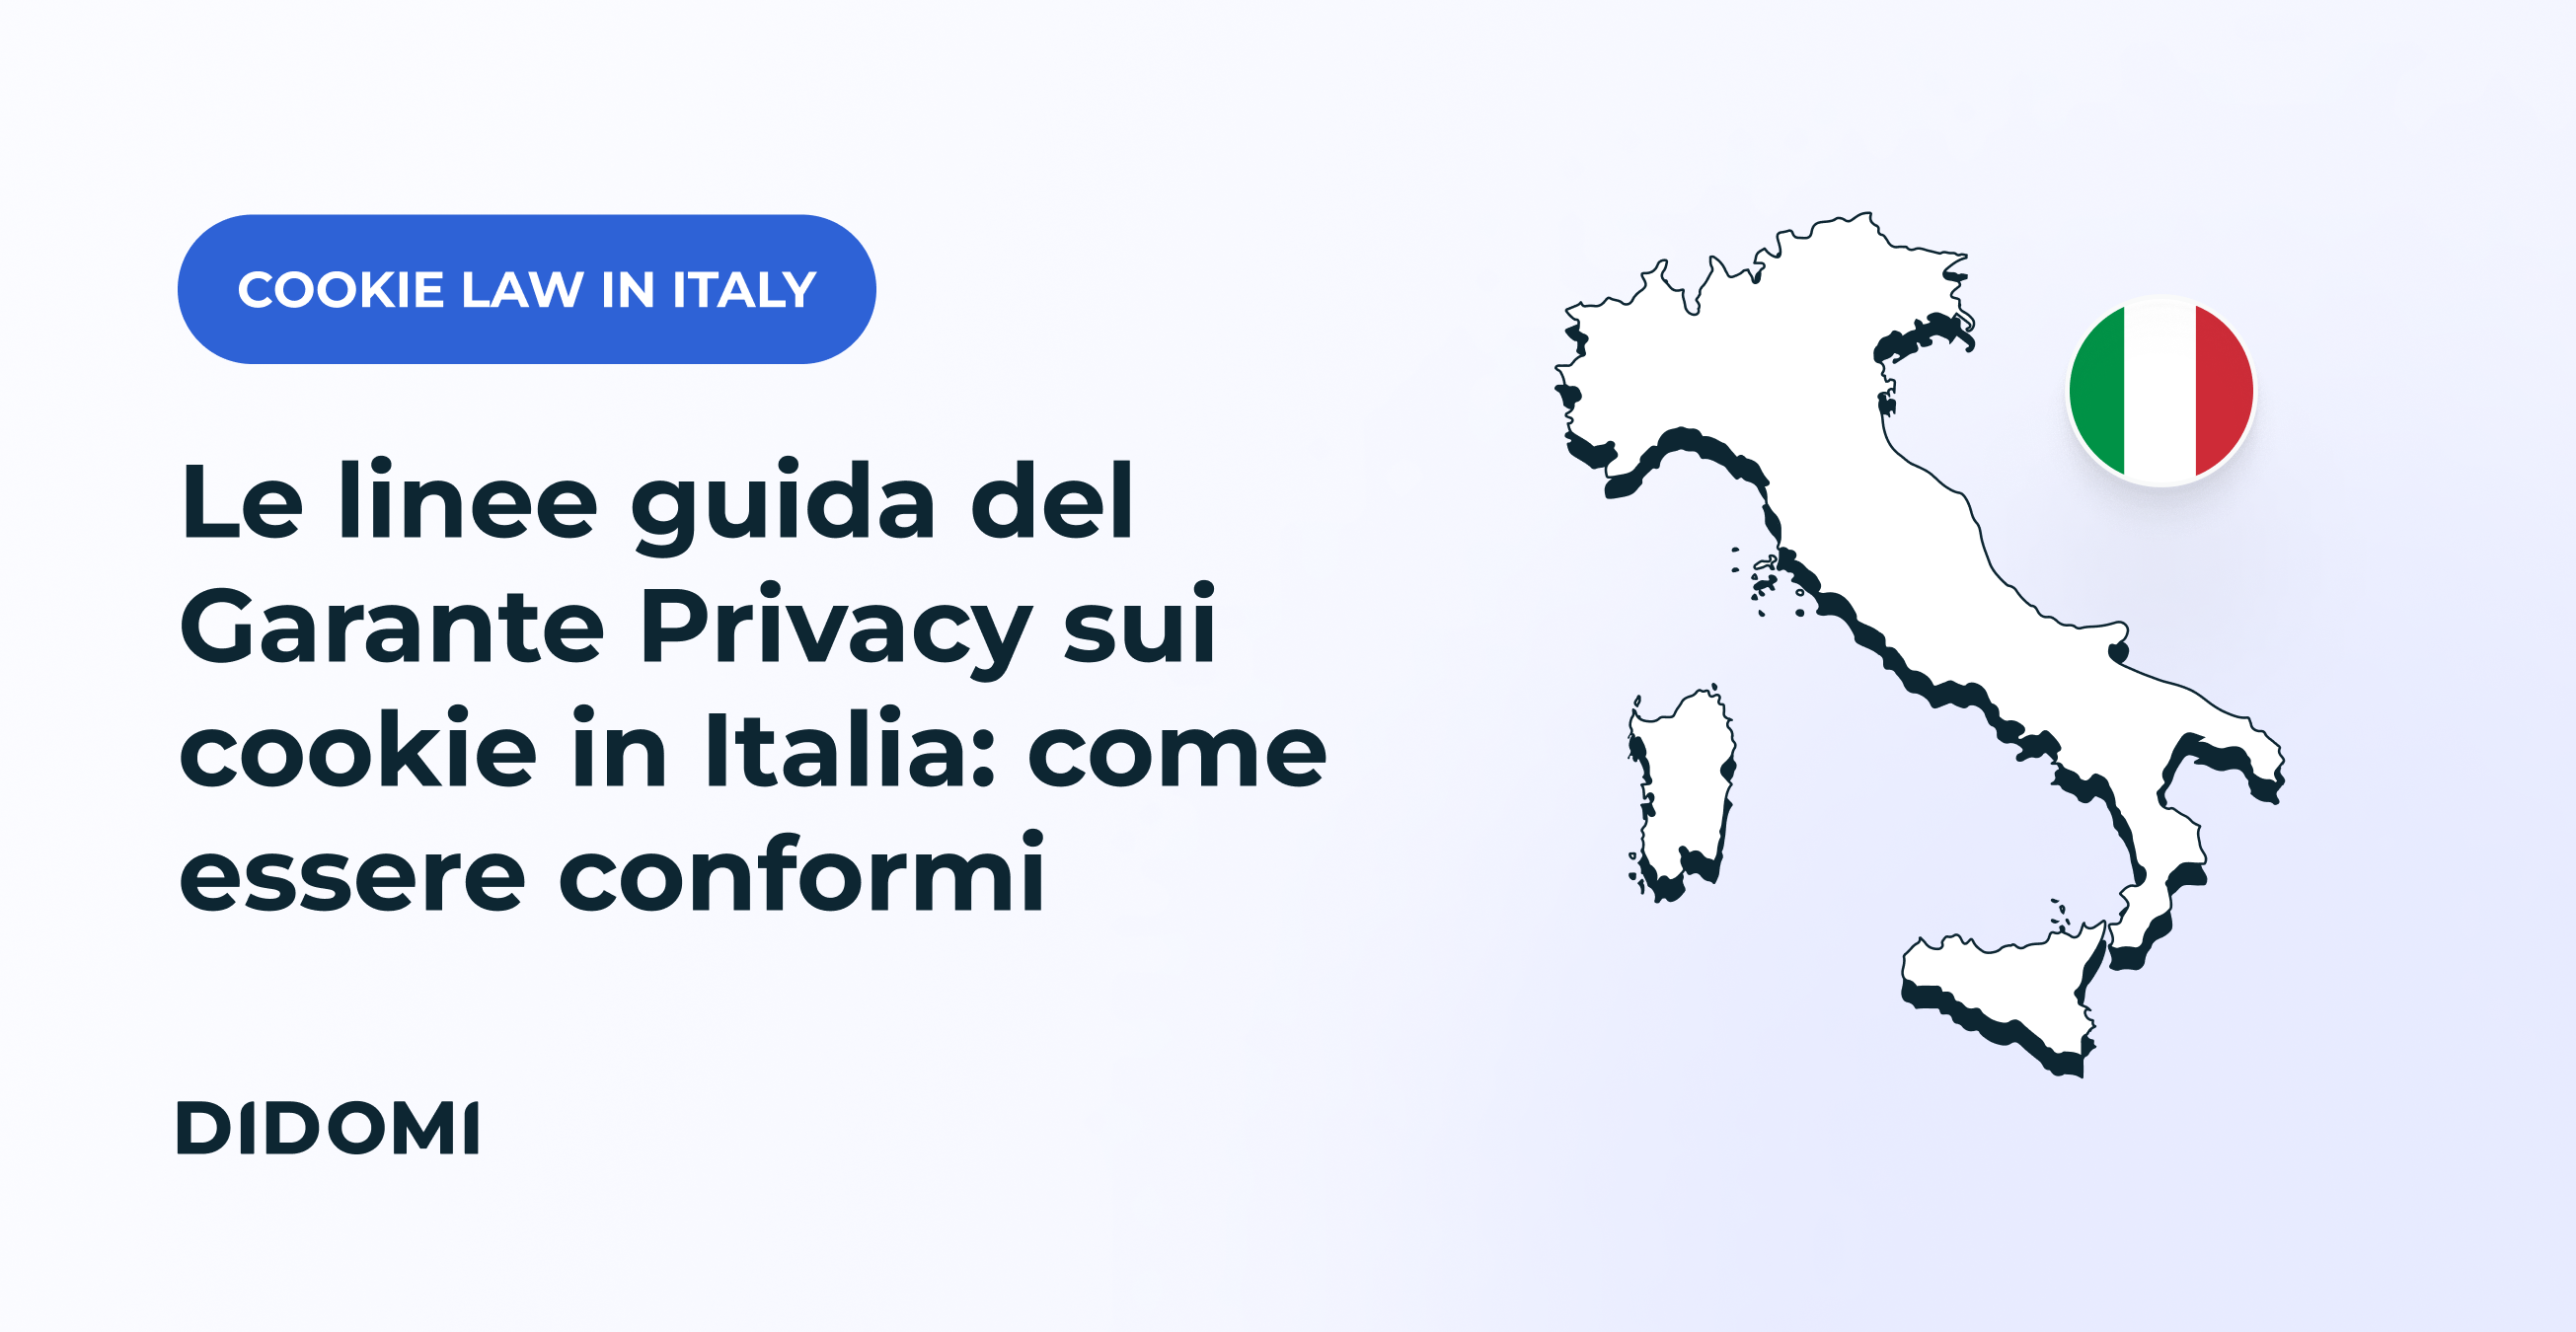 Didomi - Le linee guida del Garante Privacy sui cookie in Italia: come essere conformi